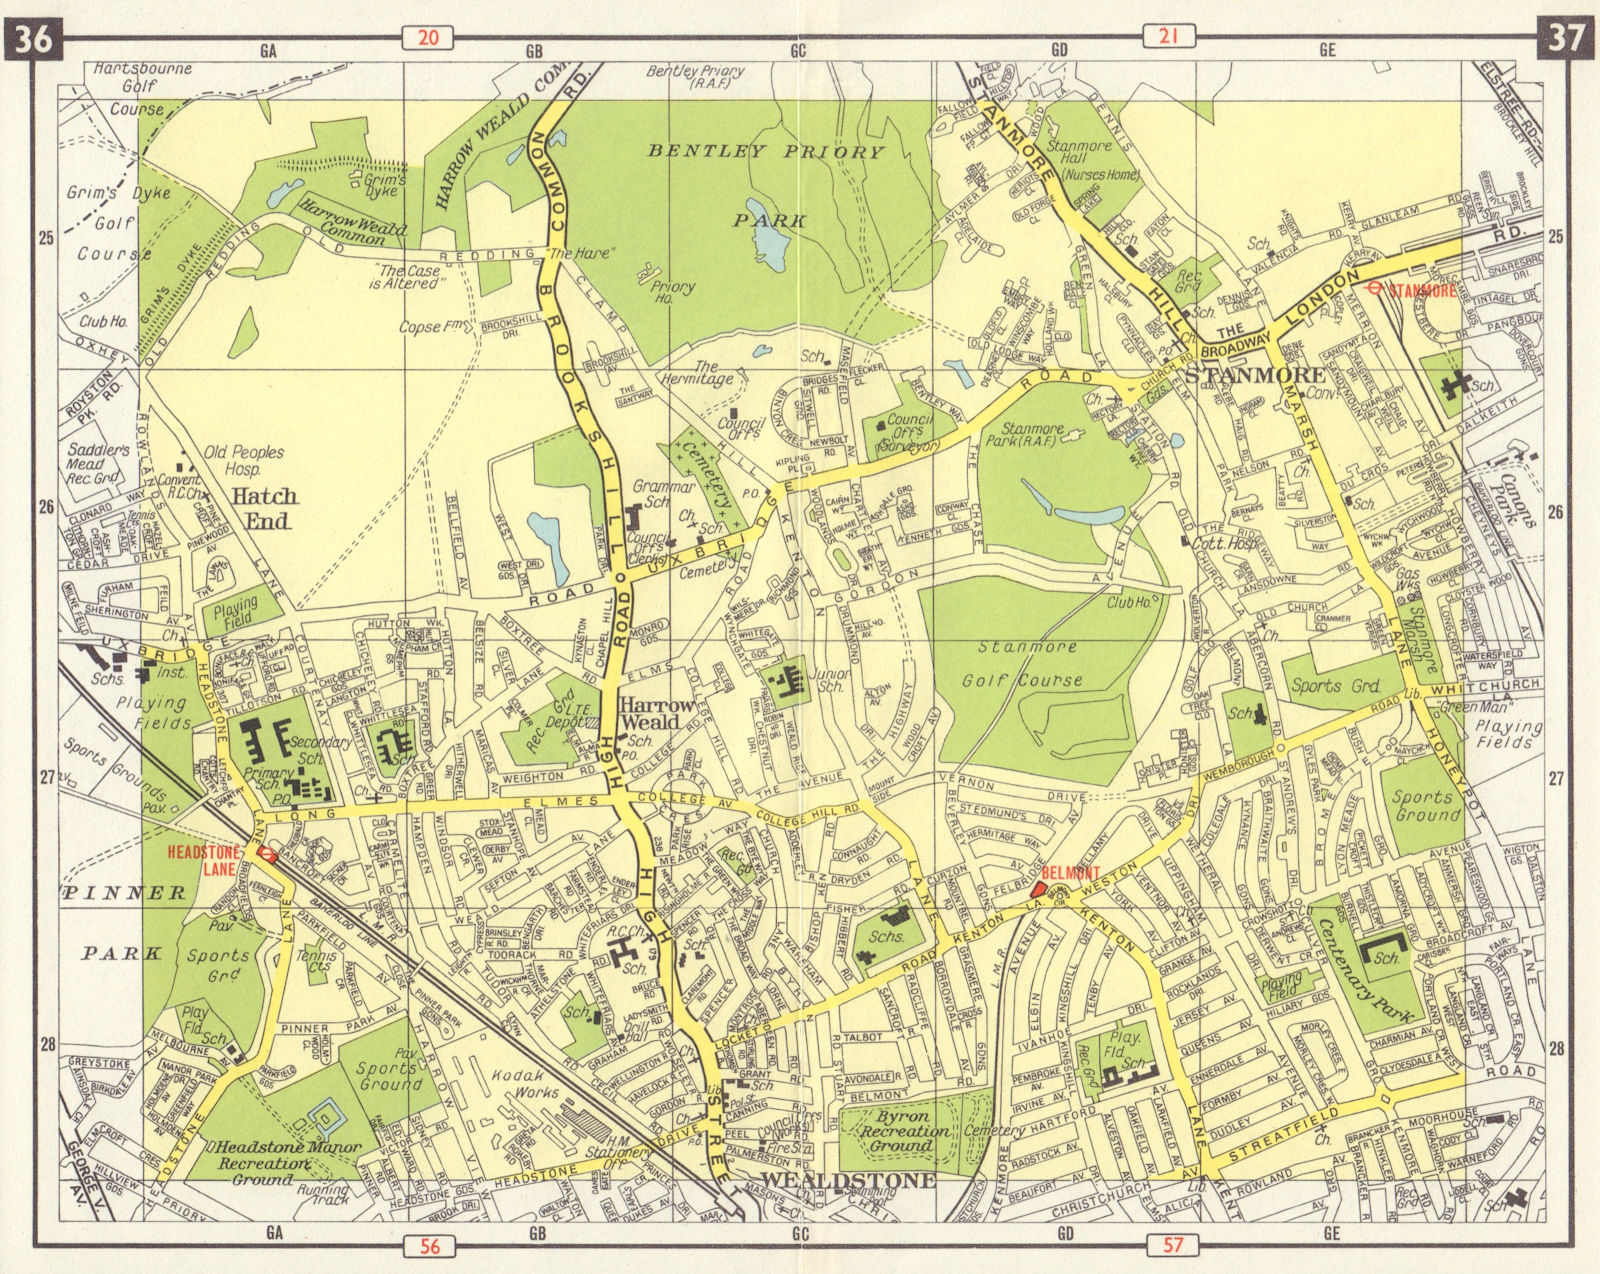 NW LONDON Wealdstone Harrow Weald Stanmore Headstone Lane Belmont 1965 old map